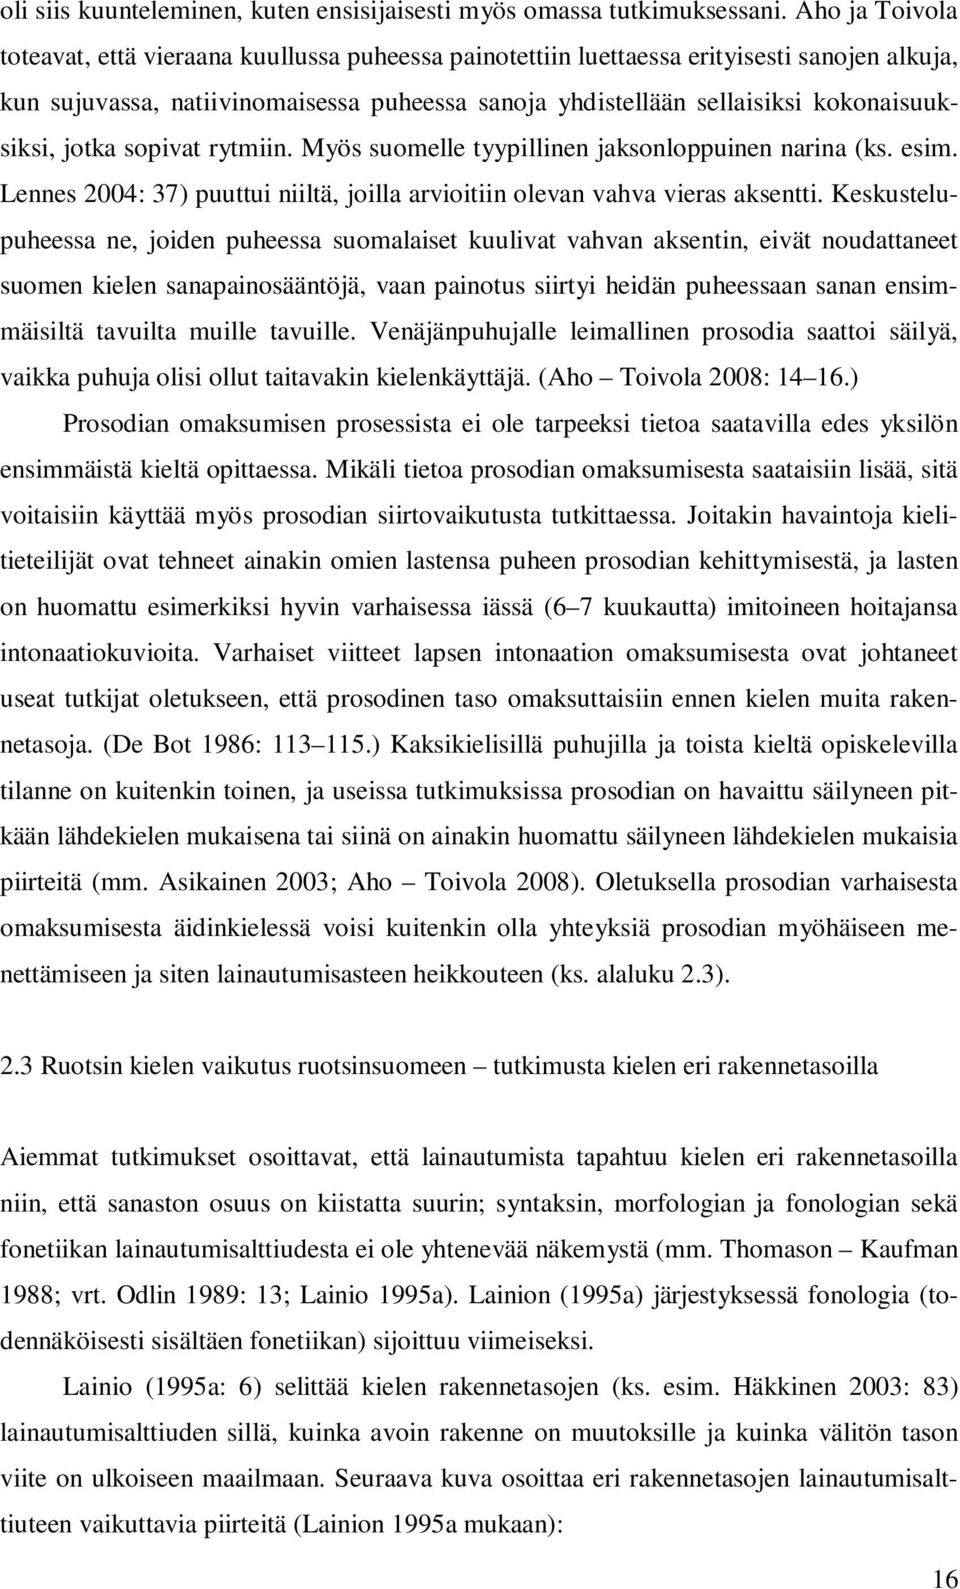 kokonaisuuksiksi, jotka sopivat rytmiin. Myös suomelle tyypillinen jaksonloppuinen narina (ks. esim. Lennes 2004: 37) puuttui niiltä, joilla arvioitiin olevan vahva vieras aksentti.